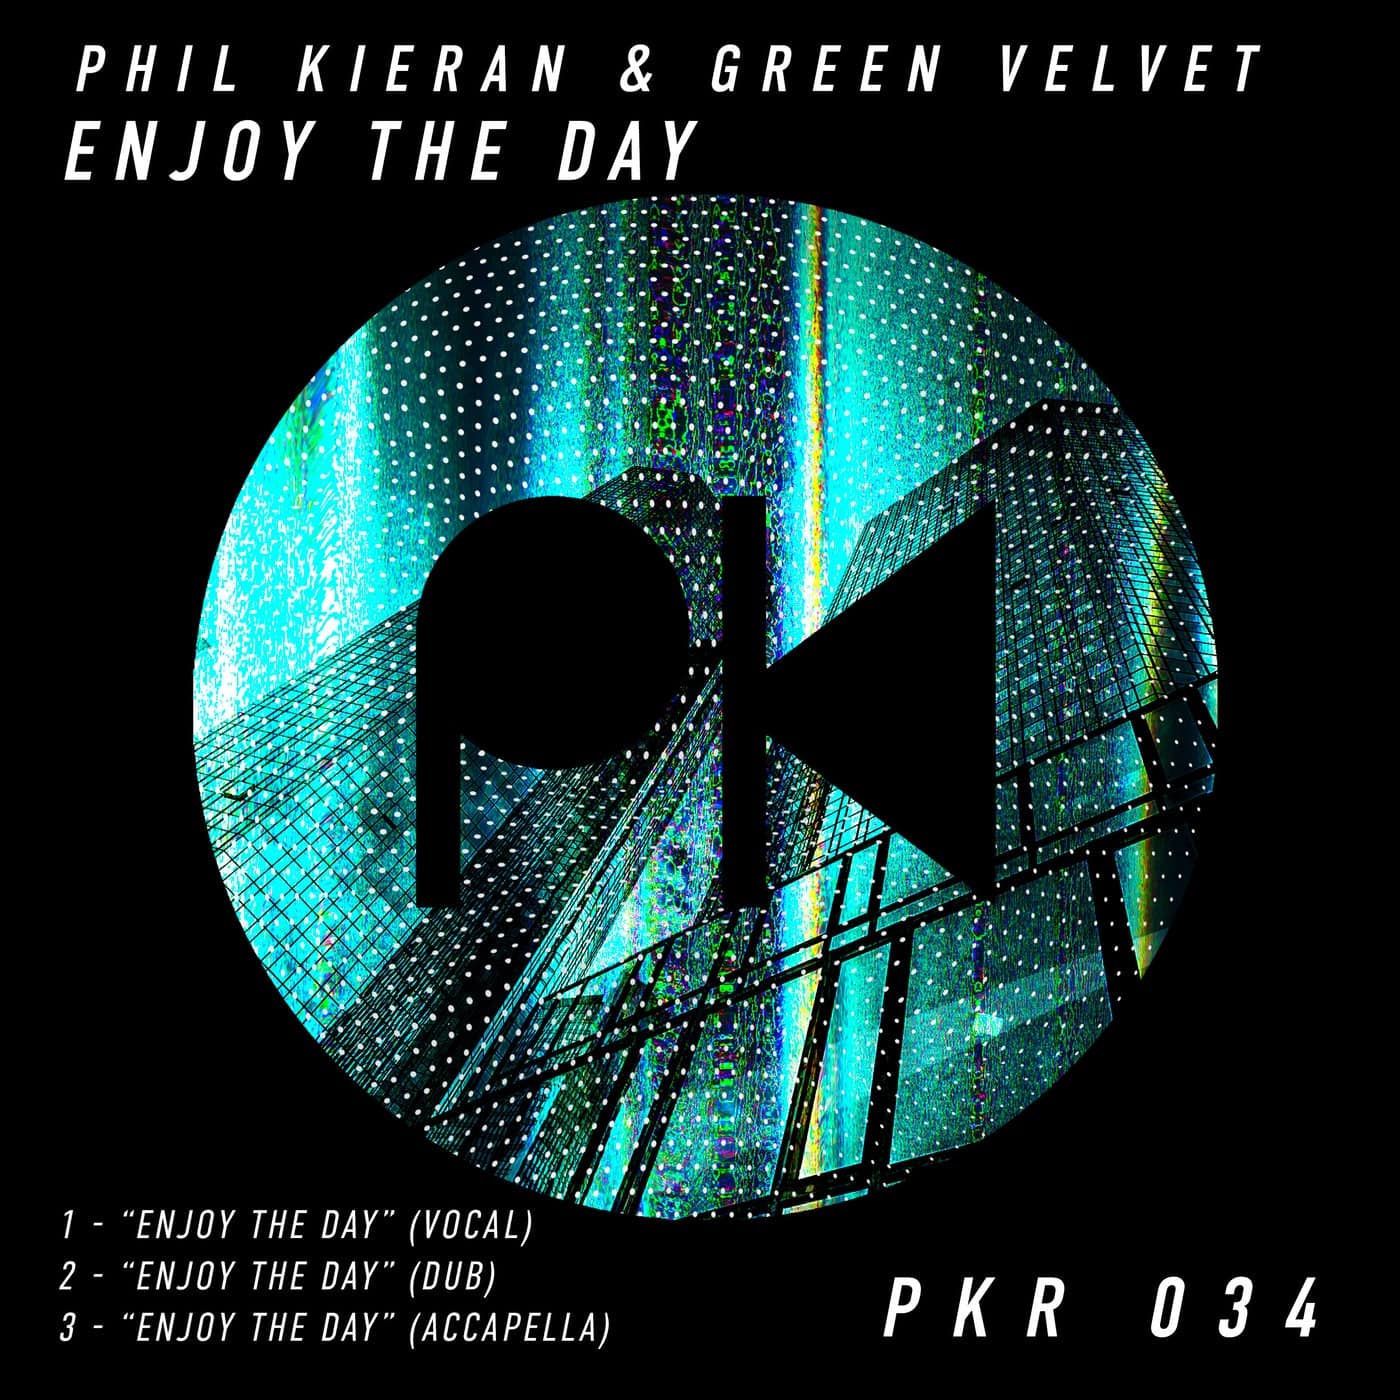 image cover: Phil Kieran & Green Velvet - Phil Kieran & Green Velvet "Enjoy The Day" / PKRD034